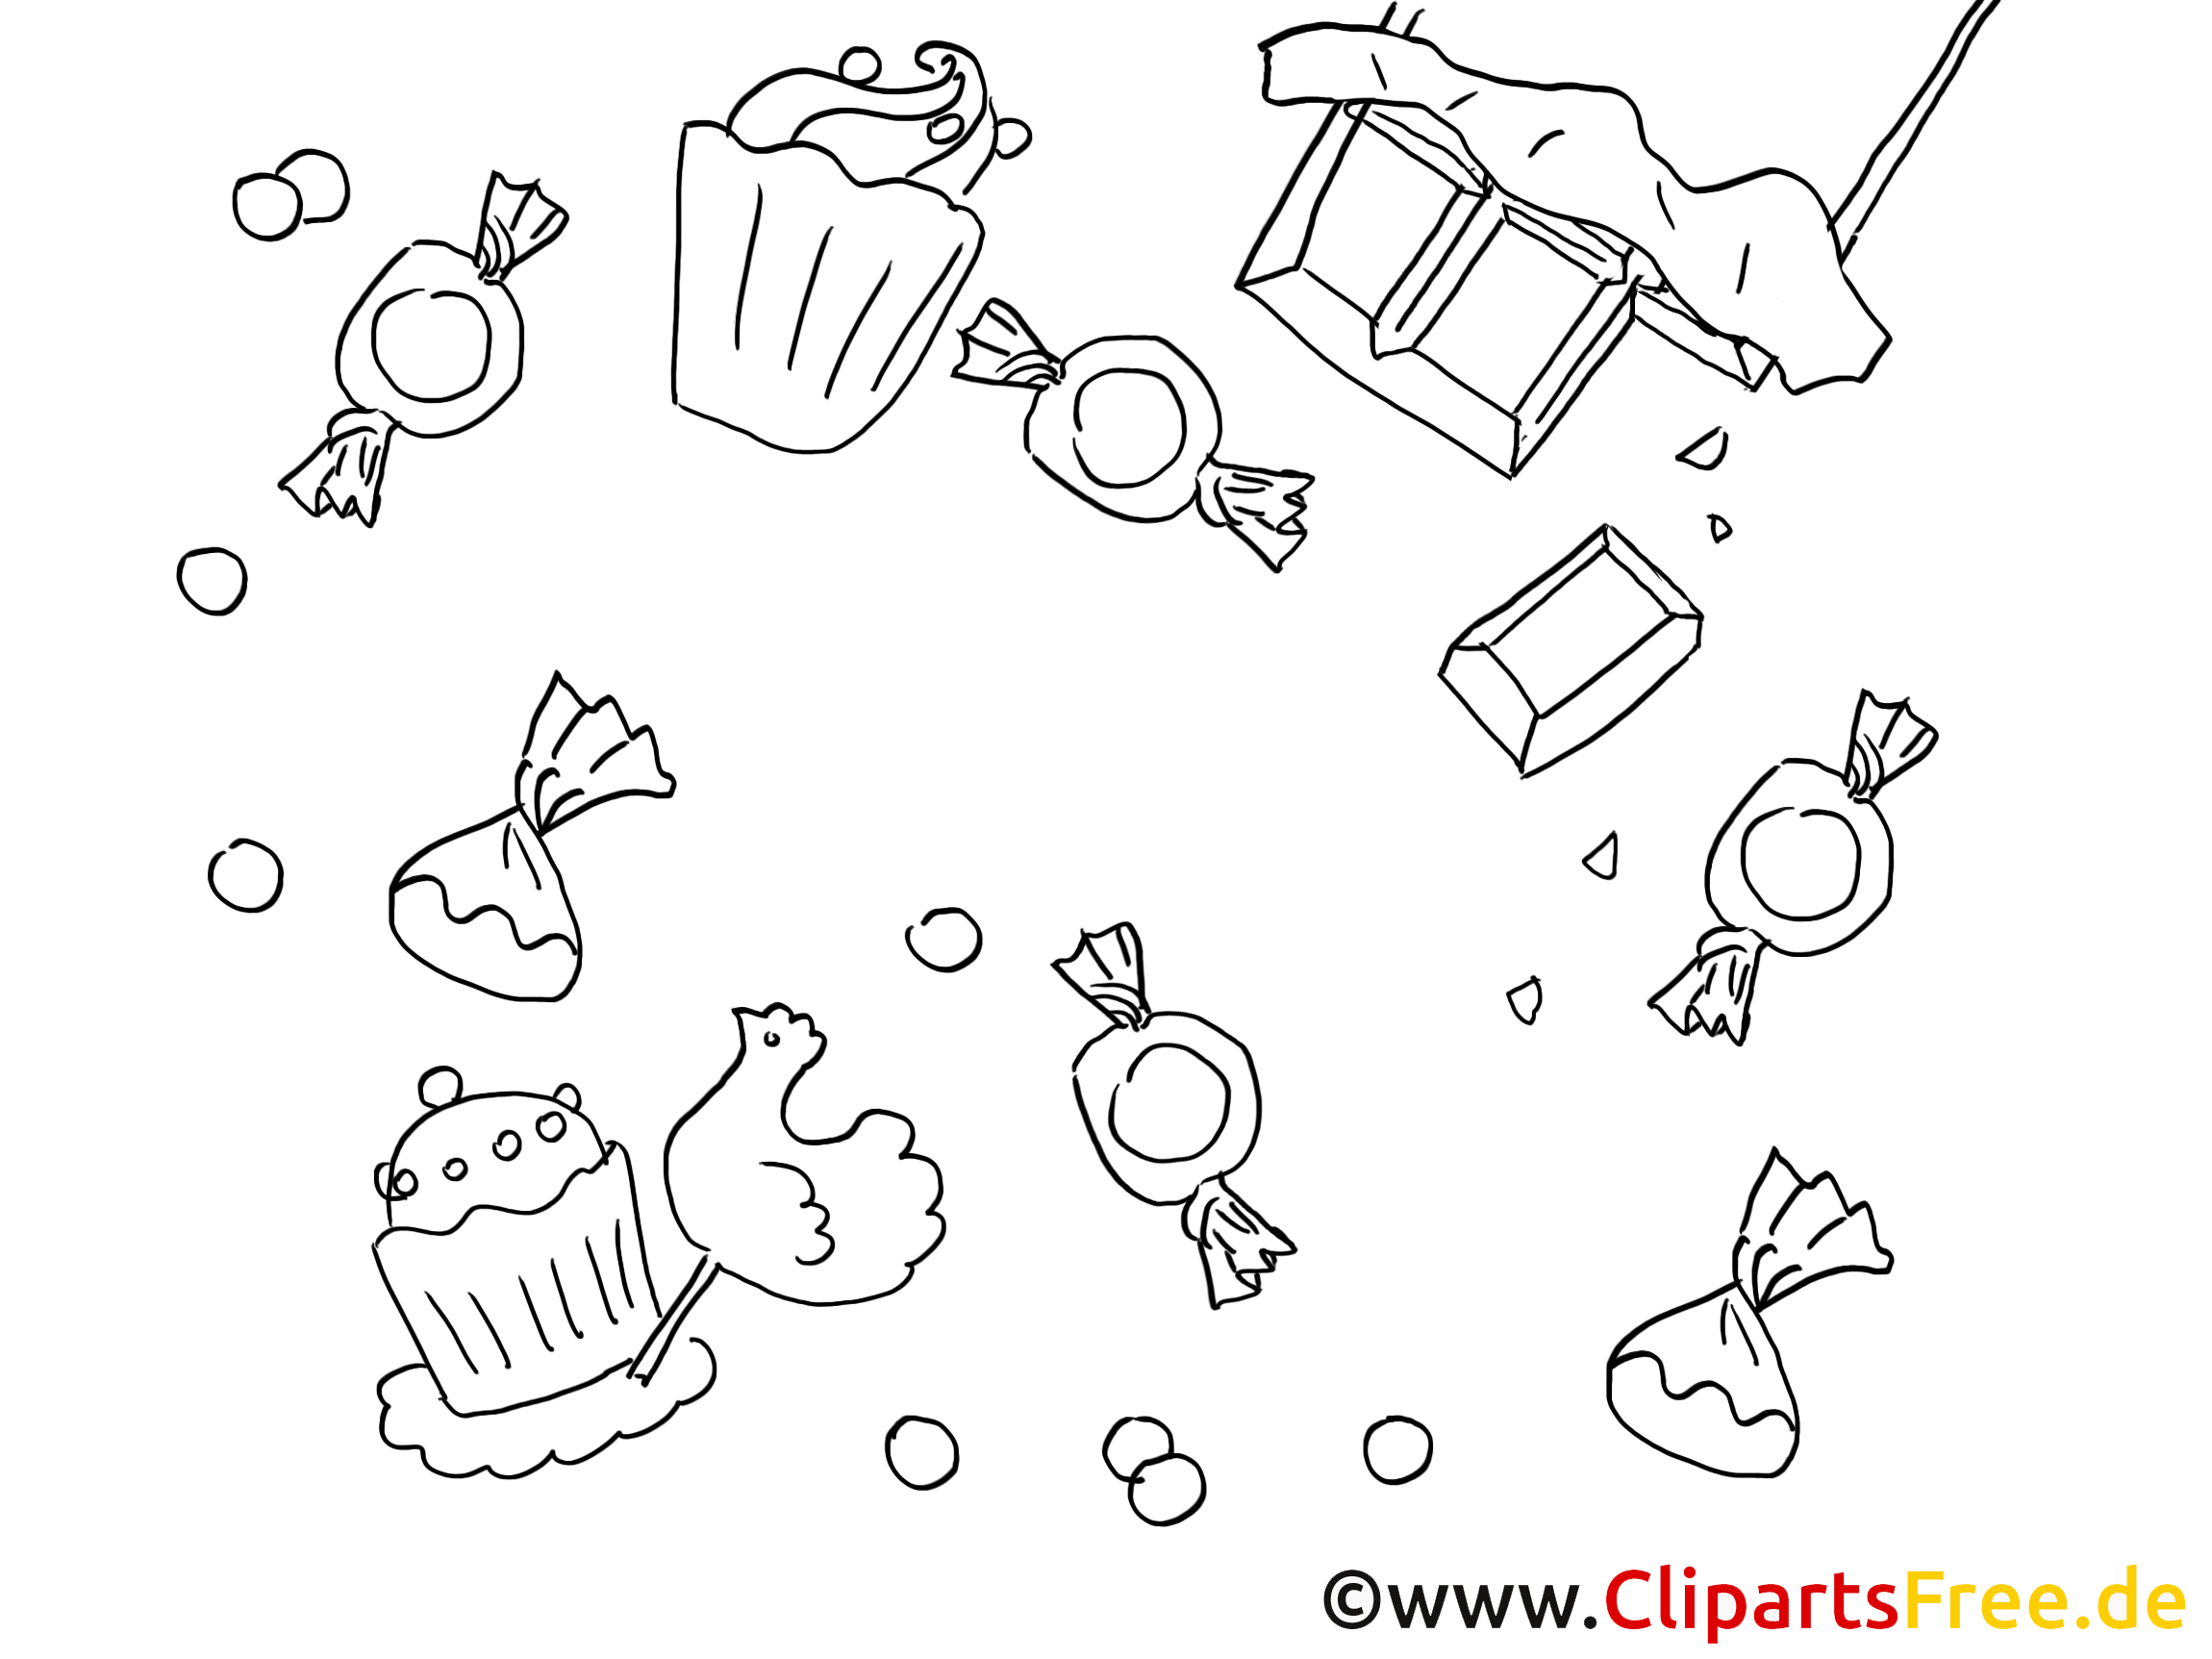 Sucrerie clipart – Invitations dessins à colorier